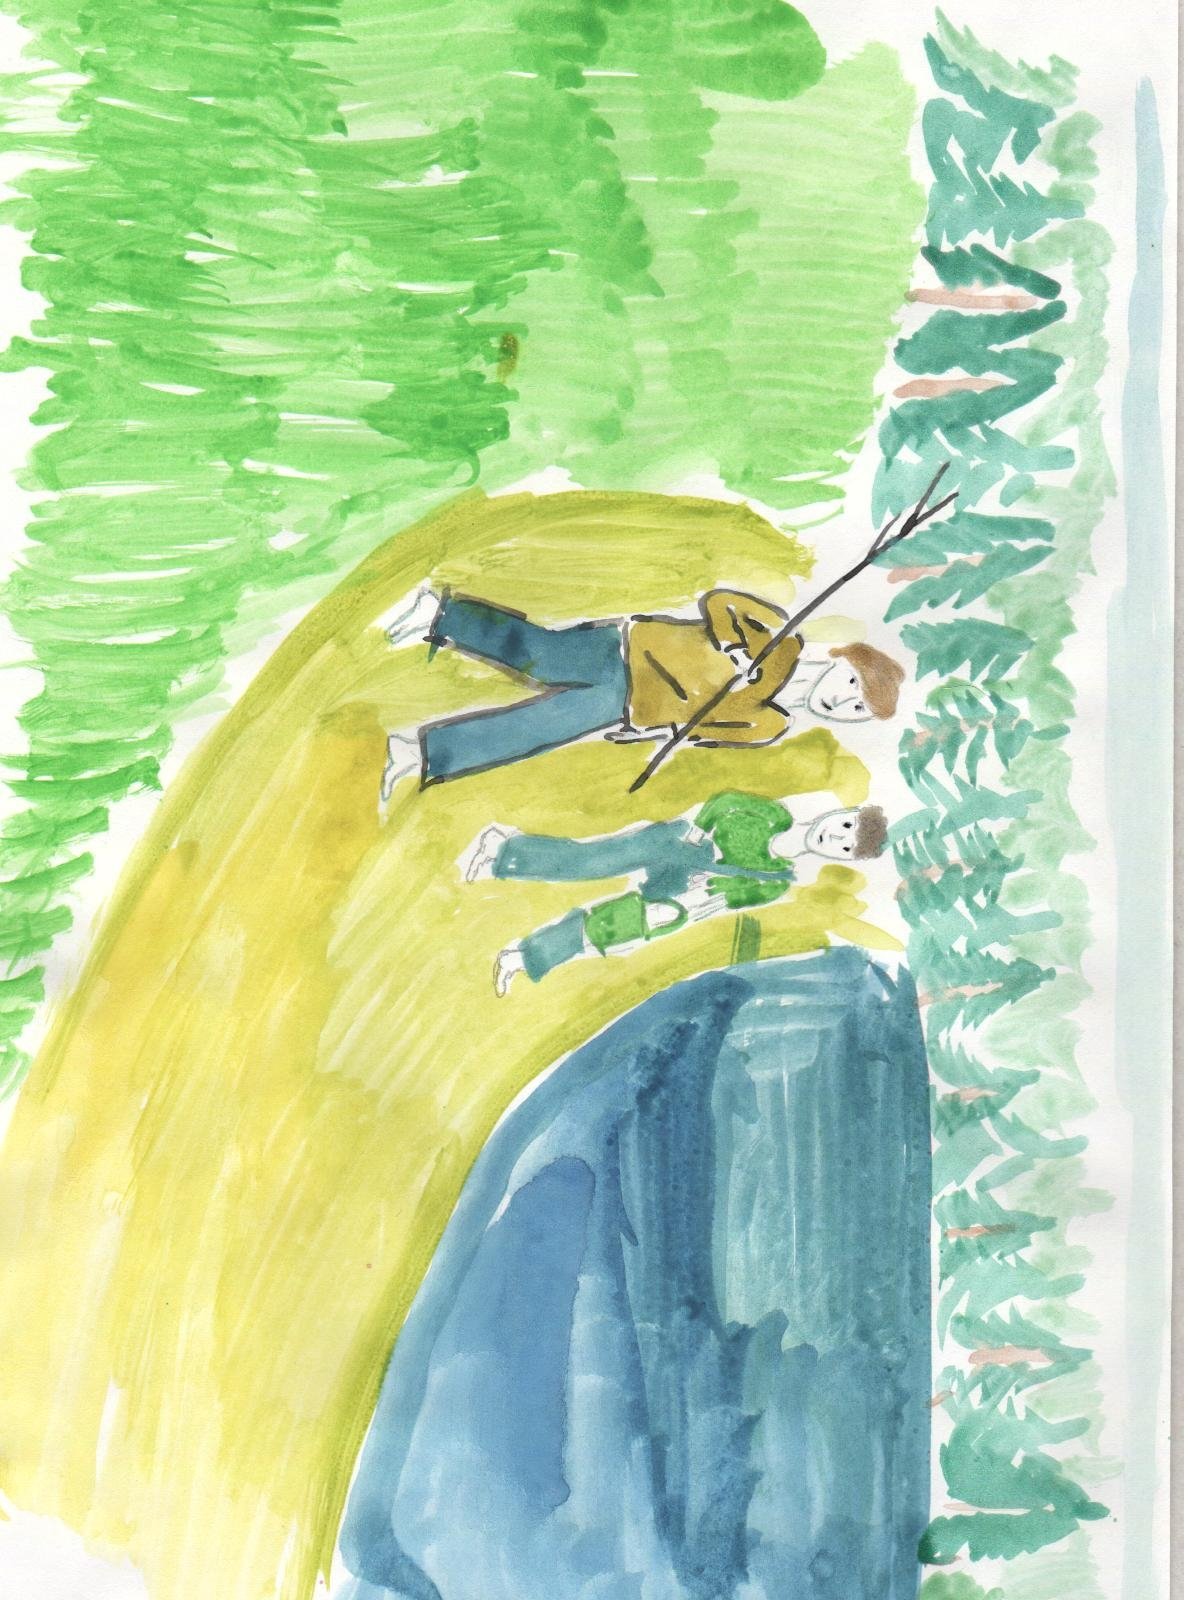 Фрагмент из васюткино озеро. Иллюстрация к рассказу Васюткино озеро. Иллюстрация Васюткино озеро 5 класс. Иллюстрация к рассказу Васюткино озеро 5 класс карандашом. Иллюстрация к сказке Васюткино озеро 5 класс.